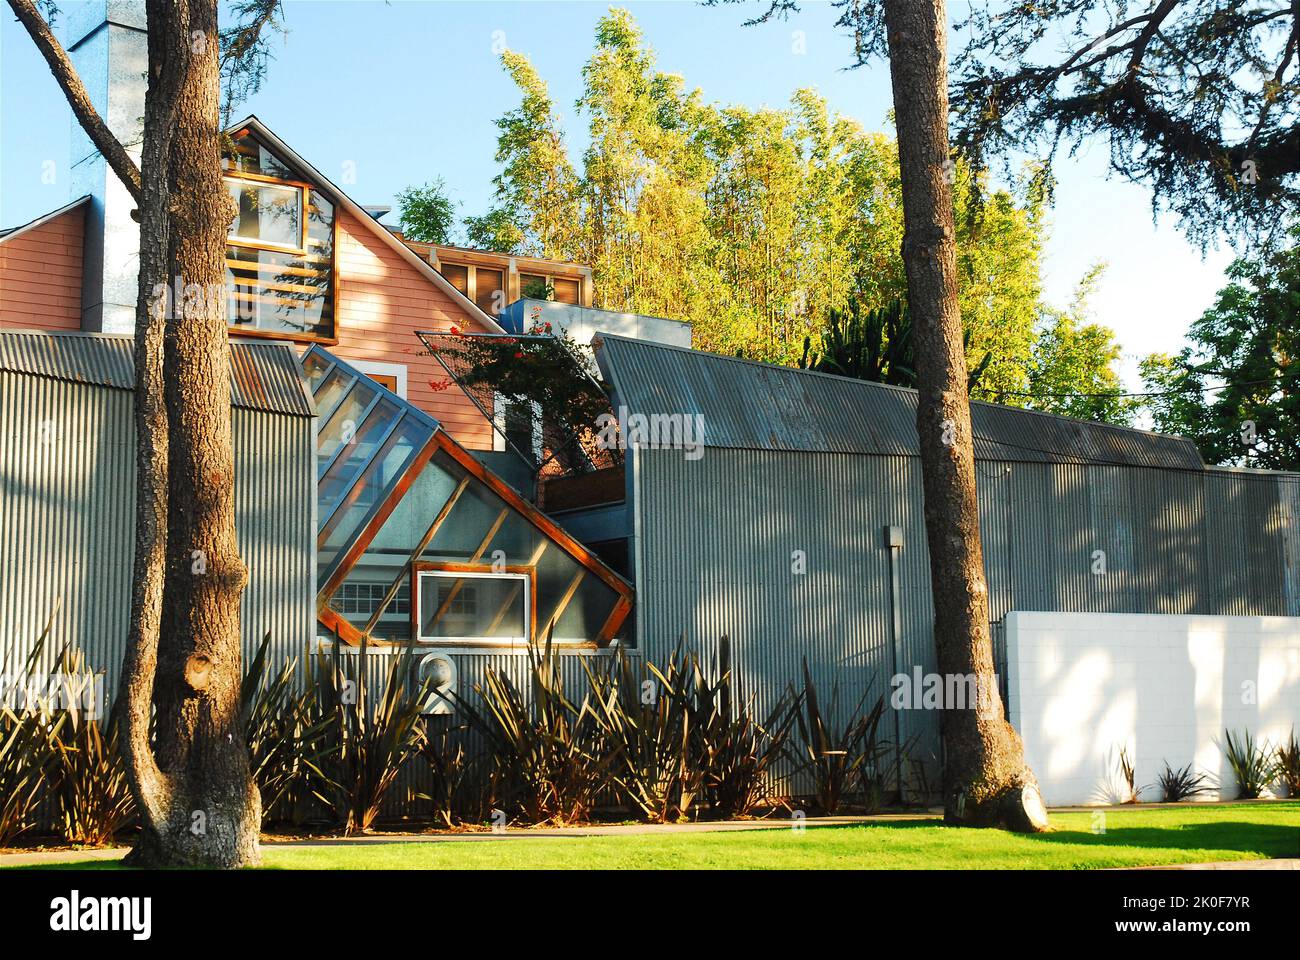 Der bekannte Architekt Frank Gehry nutzte seinen einzigartigen Lichteffekte bei der Gestaltung seines eigenen Hauses in Santa Monica in der Nähe von Los Angeles Stockfoto